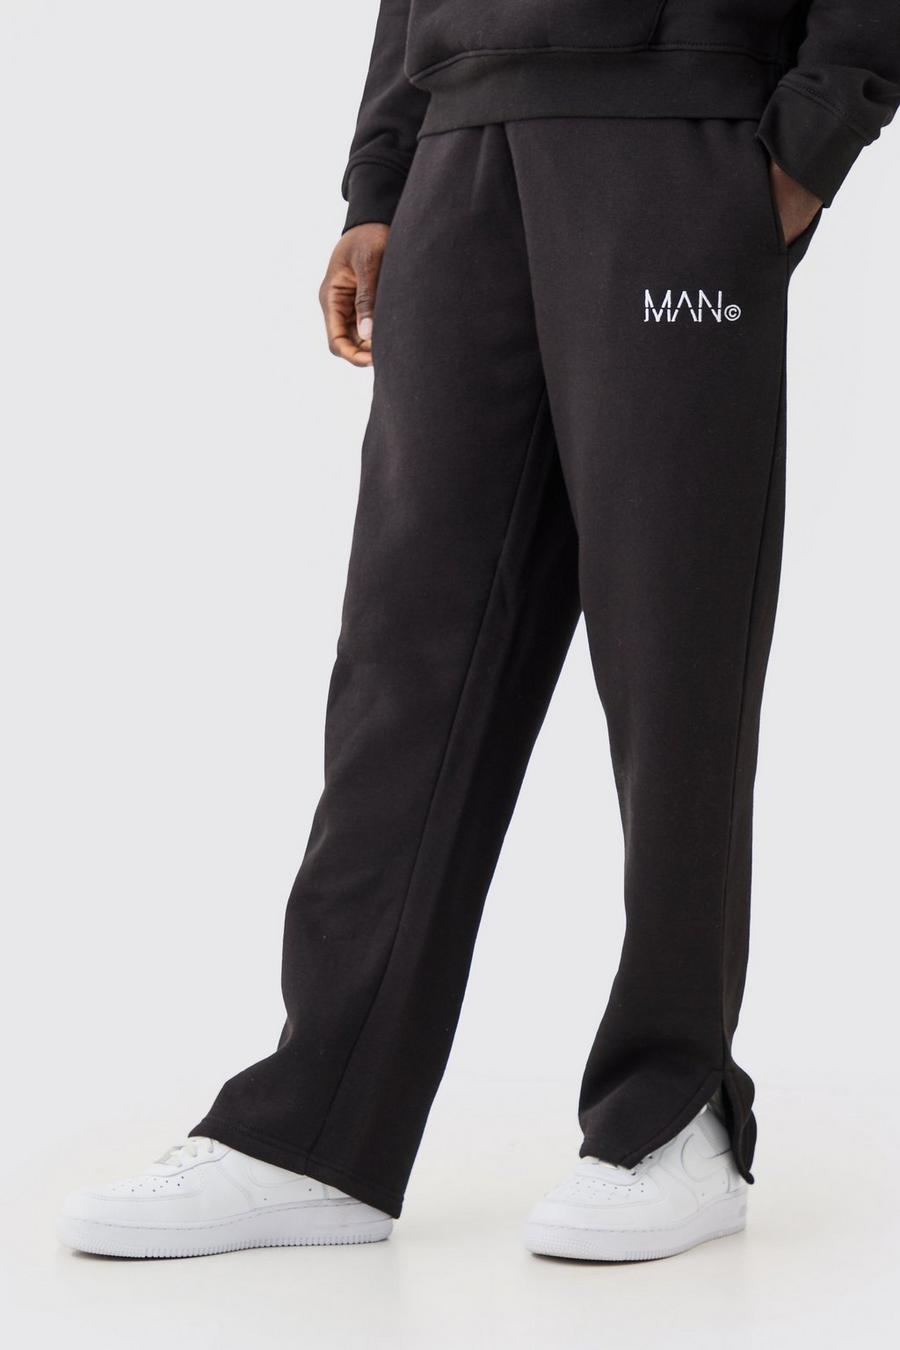 Pantaloni tuta Man con spacco sul fondo, Black